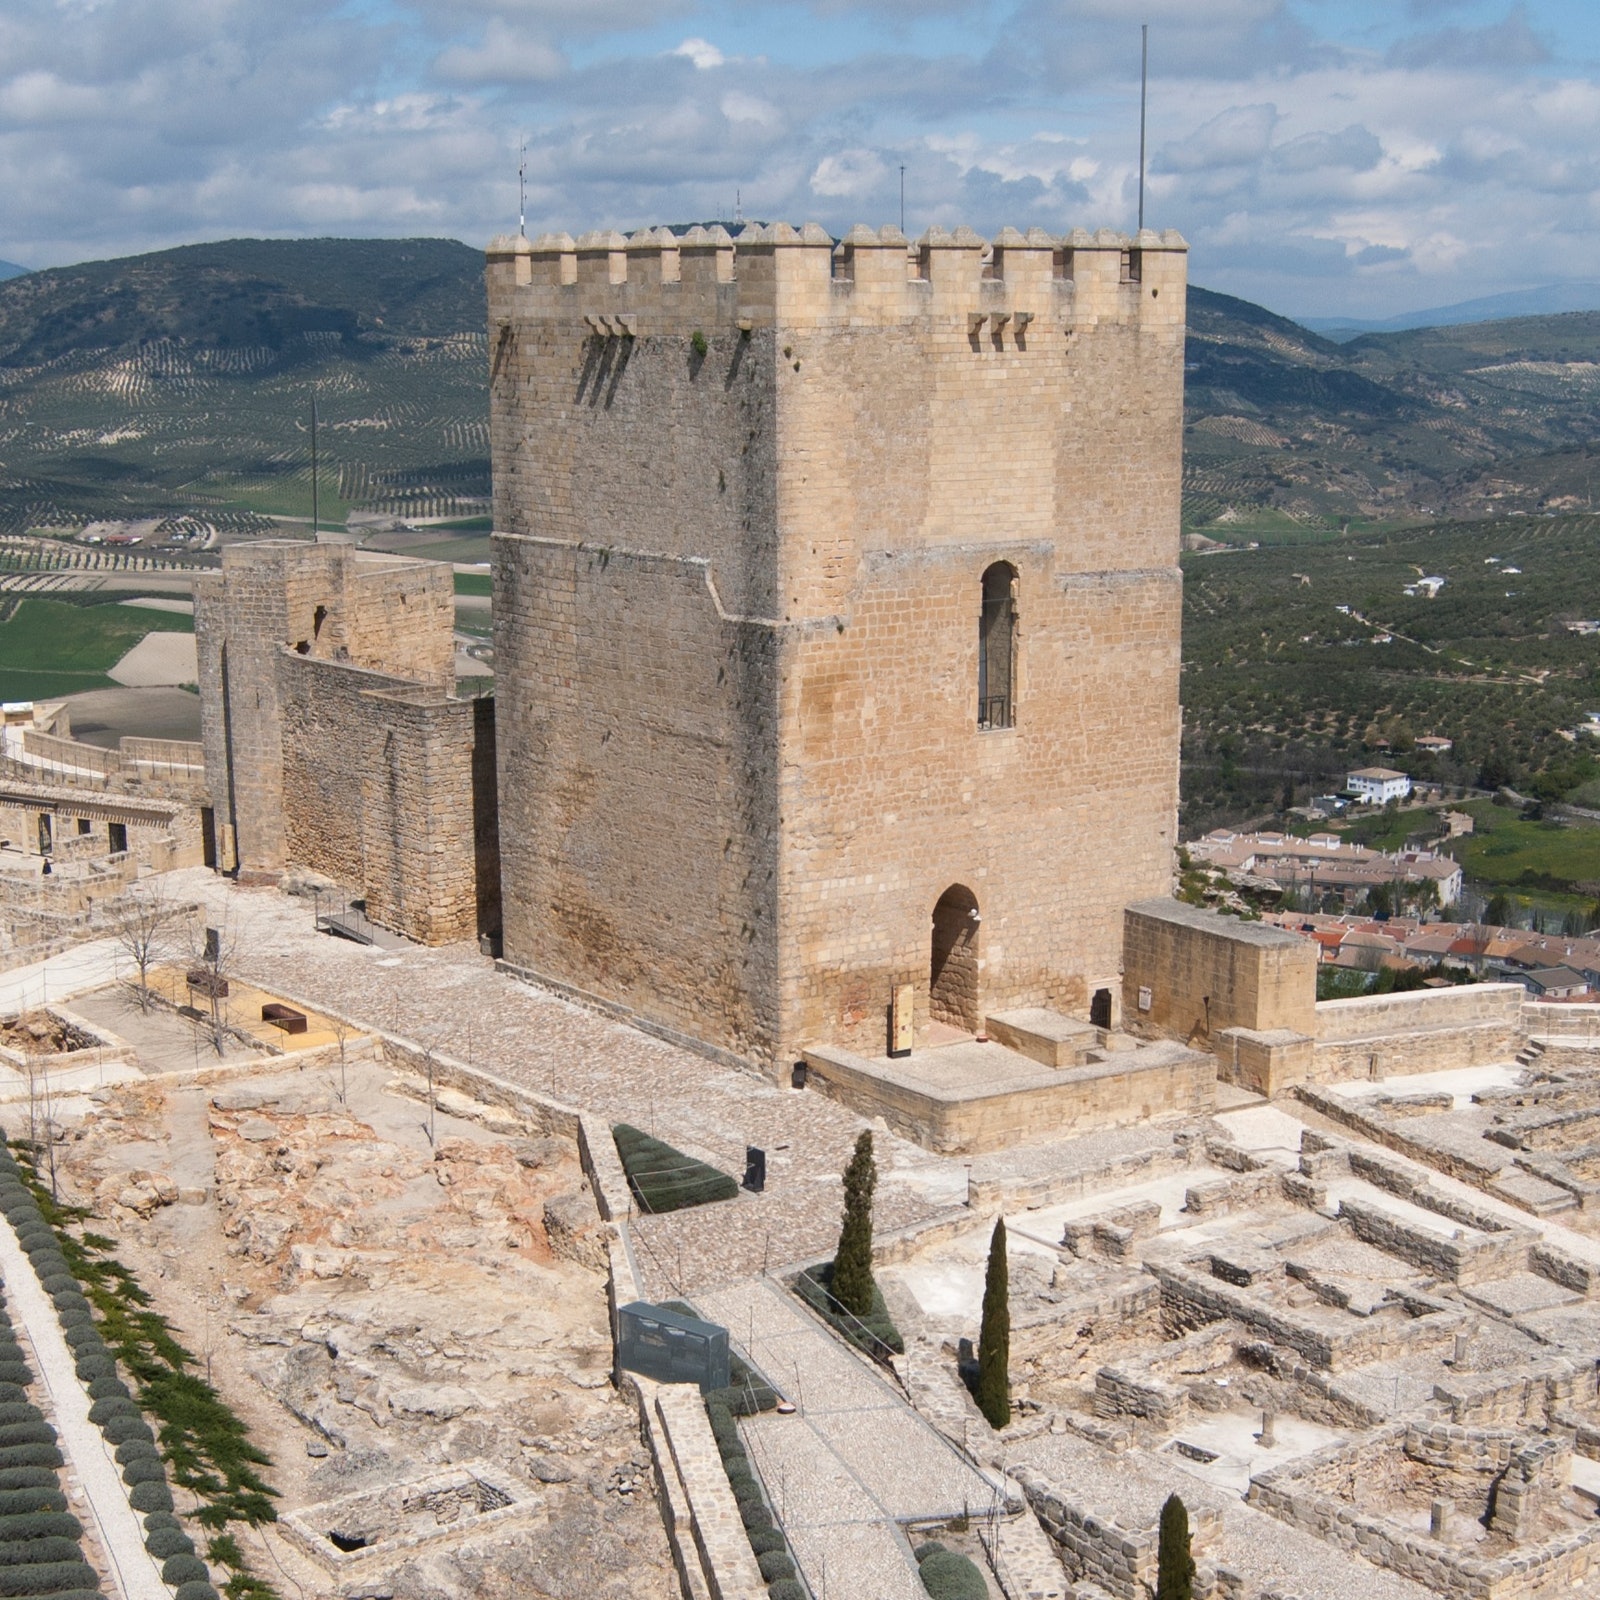 Fortress of La Mota in Spain